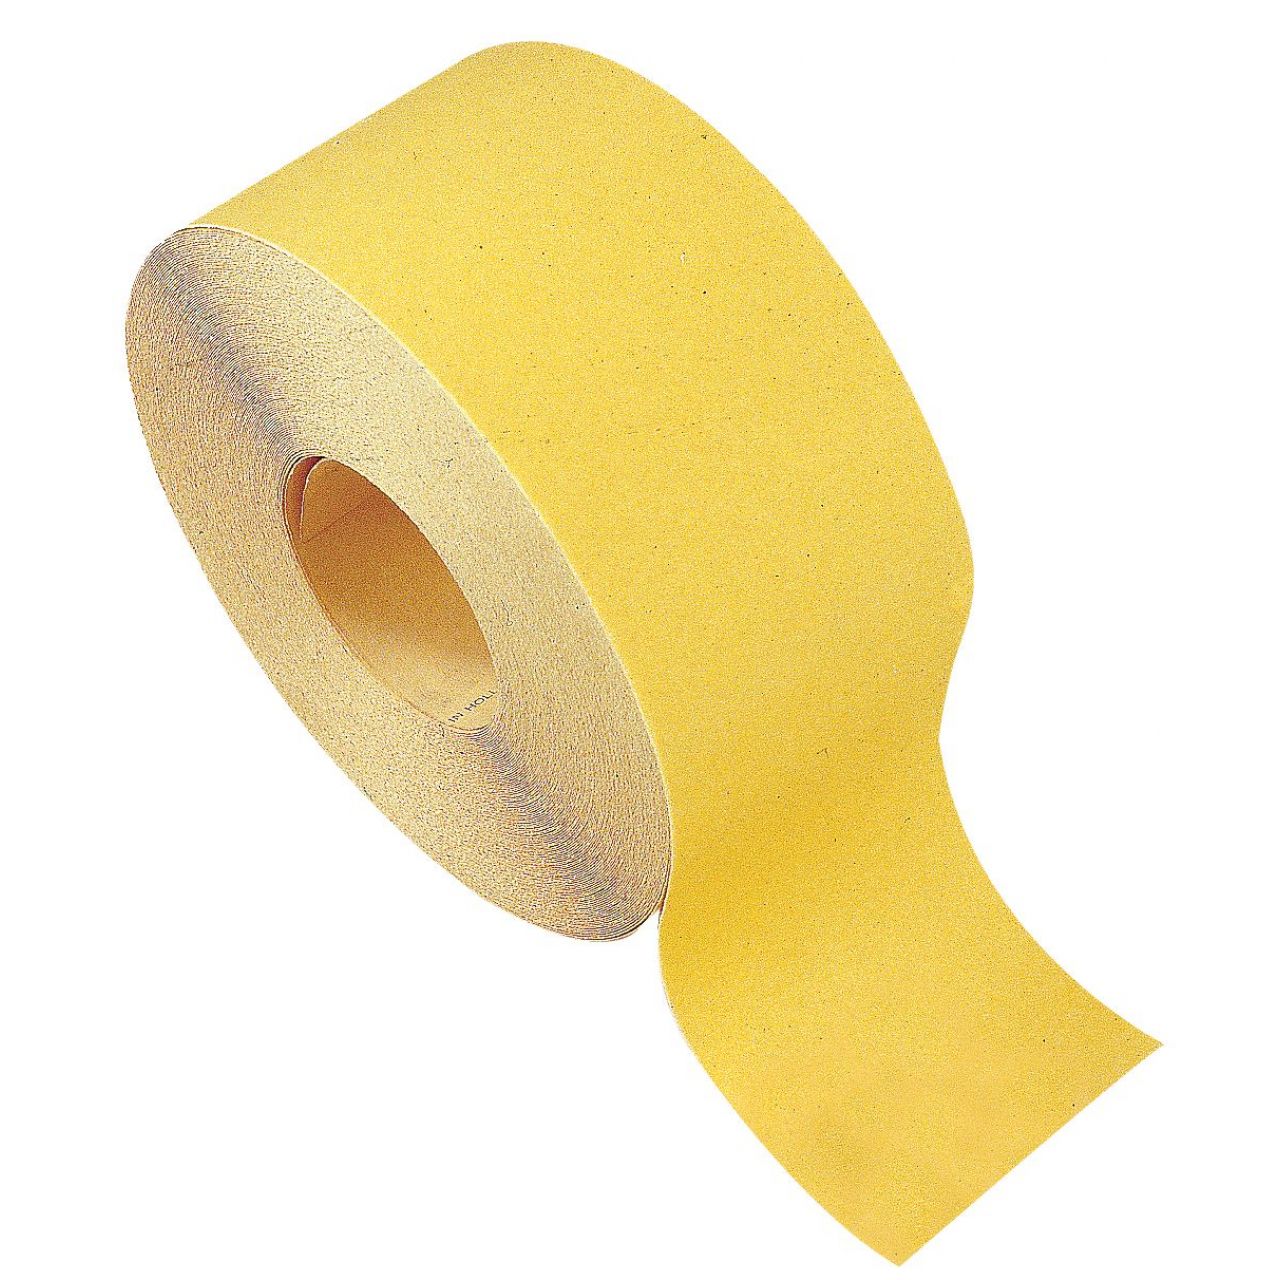 Rollos papel lija Óxido de Aluminio amarillo (120 mm x Gr.240)